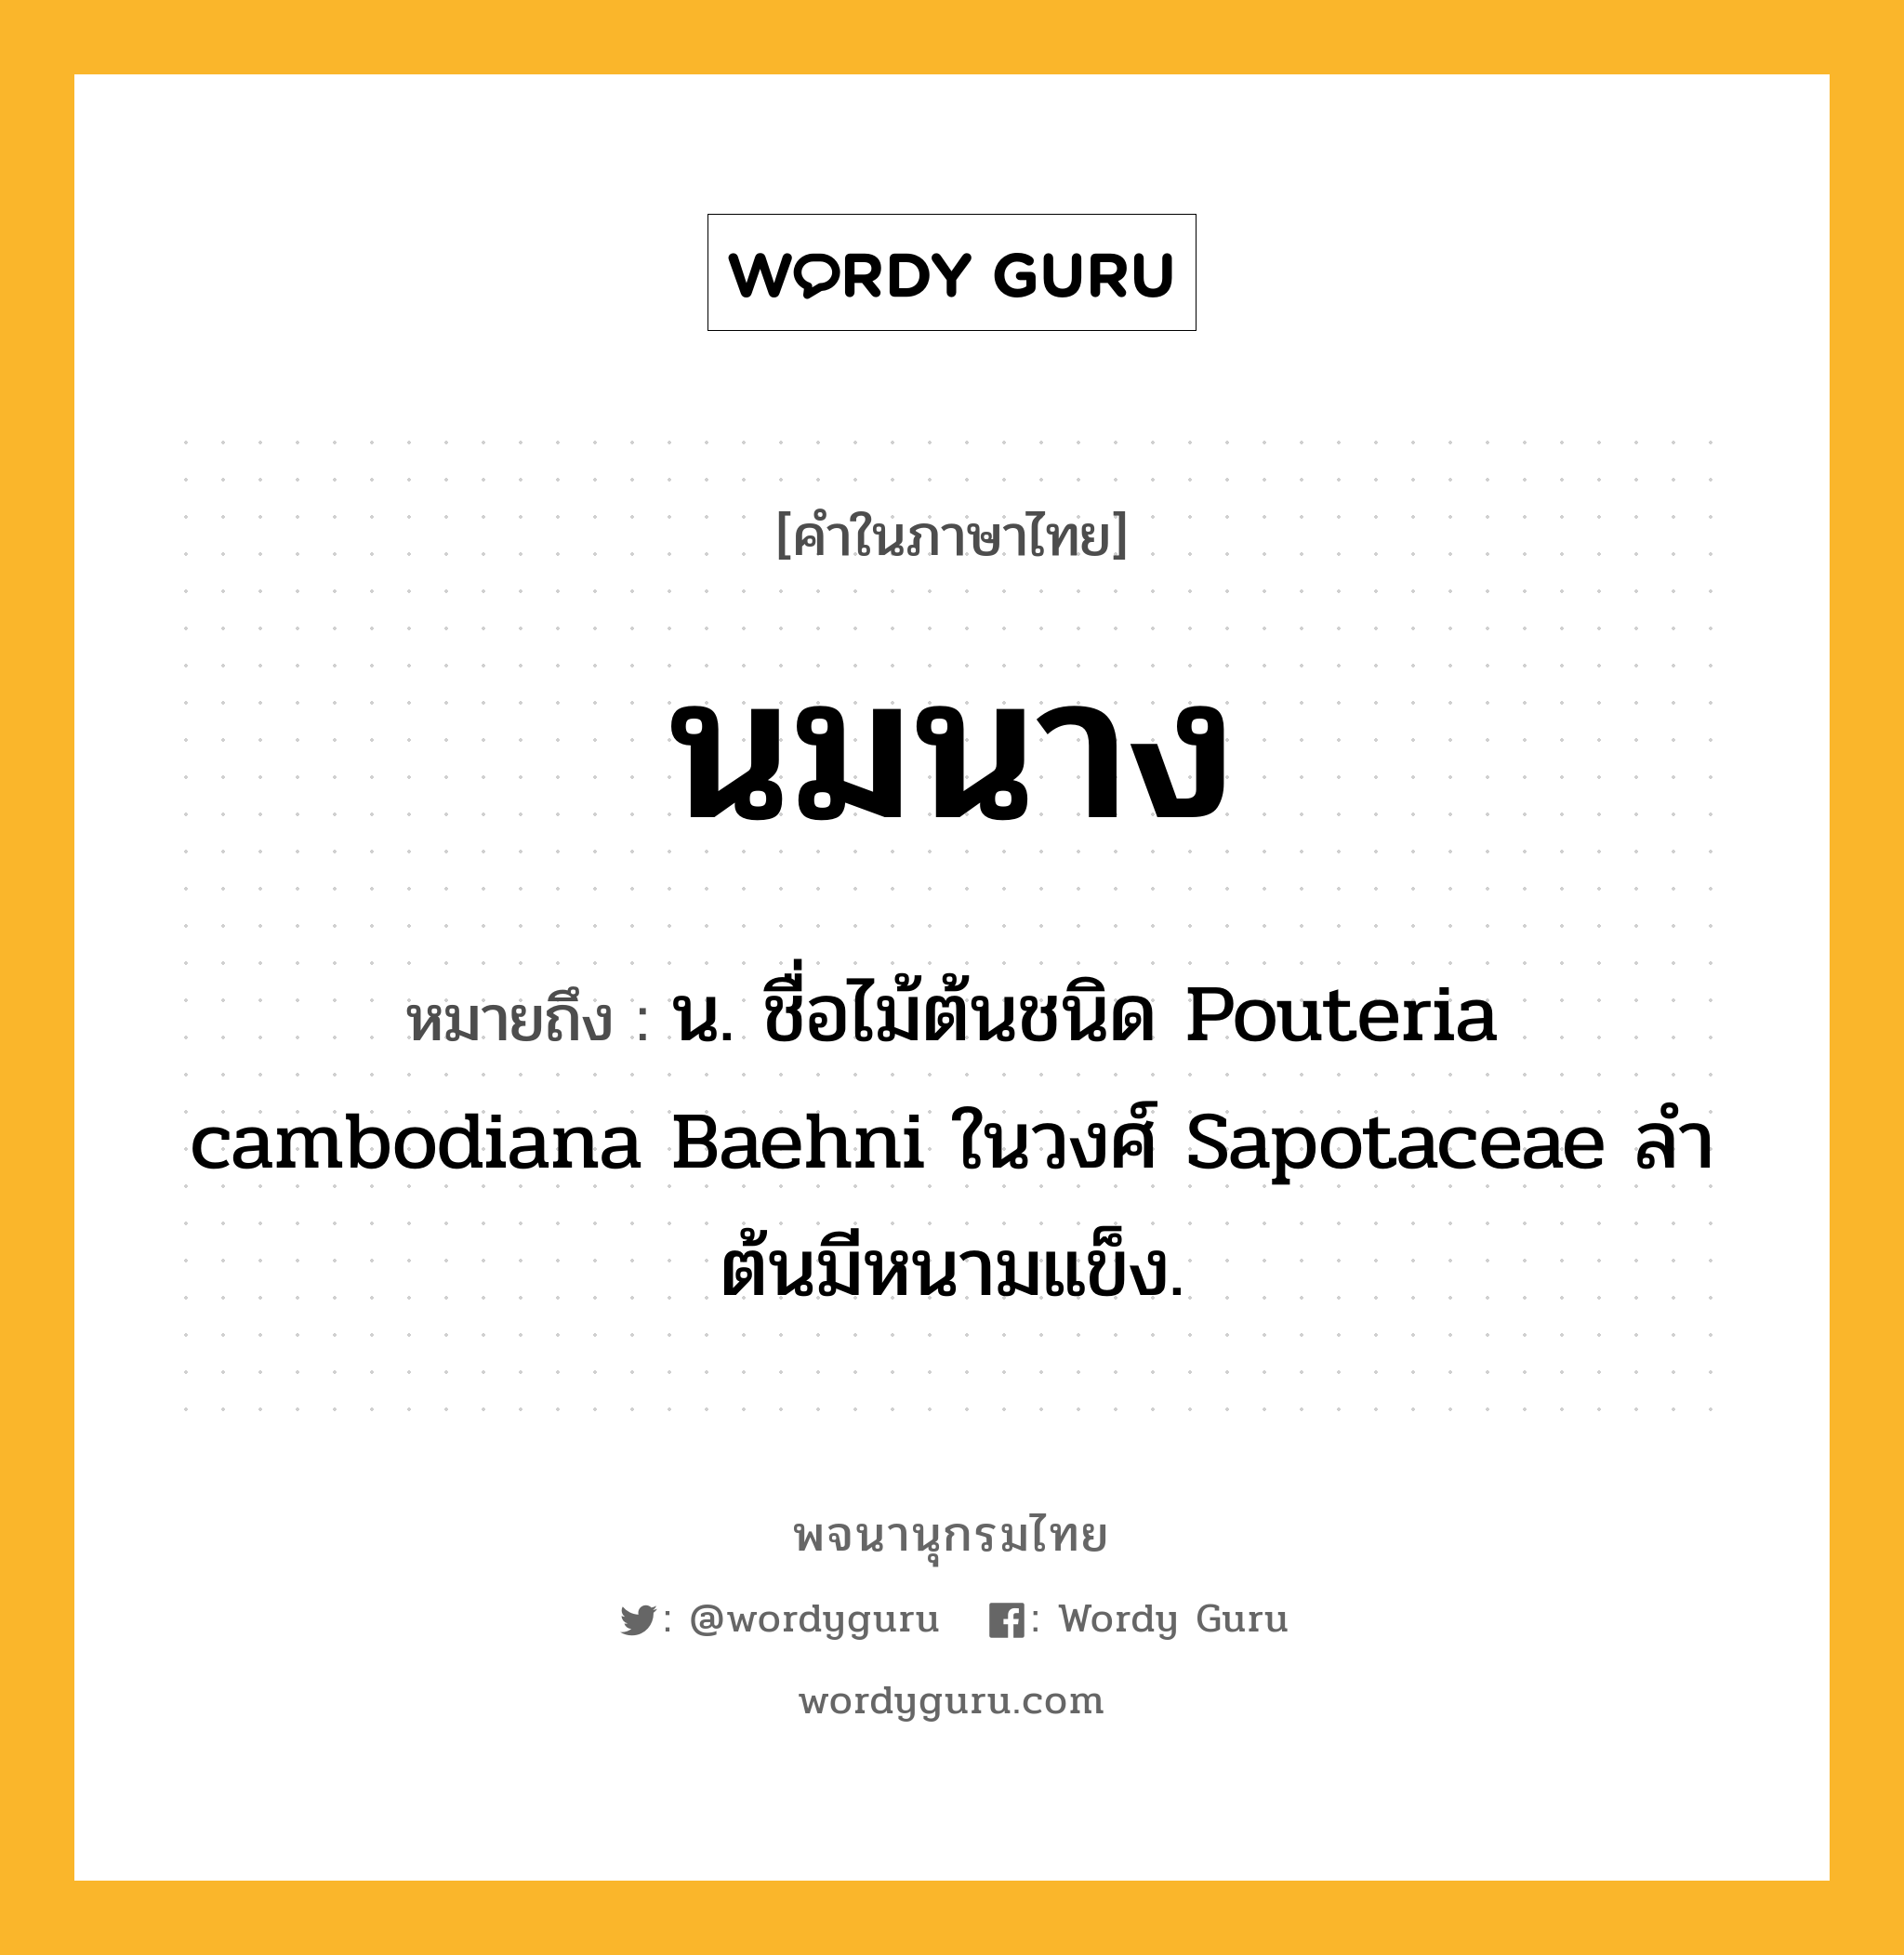 นมนาง หมายถึงอะไร?, คำในภาษาไทย นมนาง หมายถึง น. ชื่อไม้ต้นชนิด Pouteria cambodiana Baehni ในวงศ์ Sapotaceae ลําต้นมีหนามแข็ง.